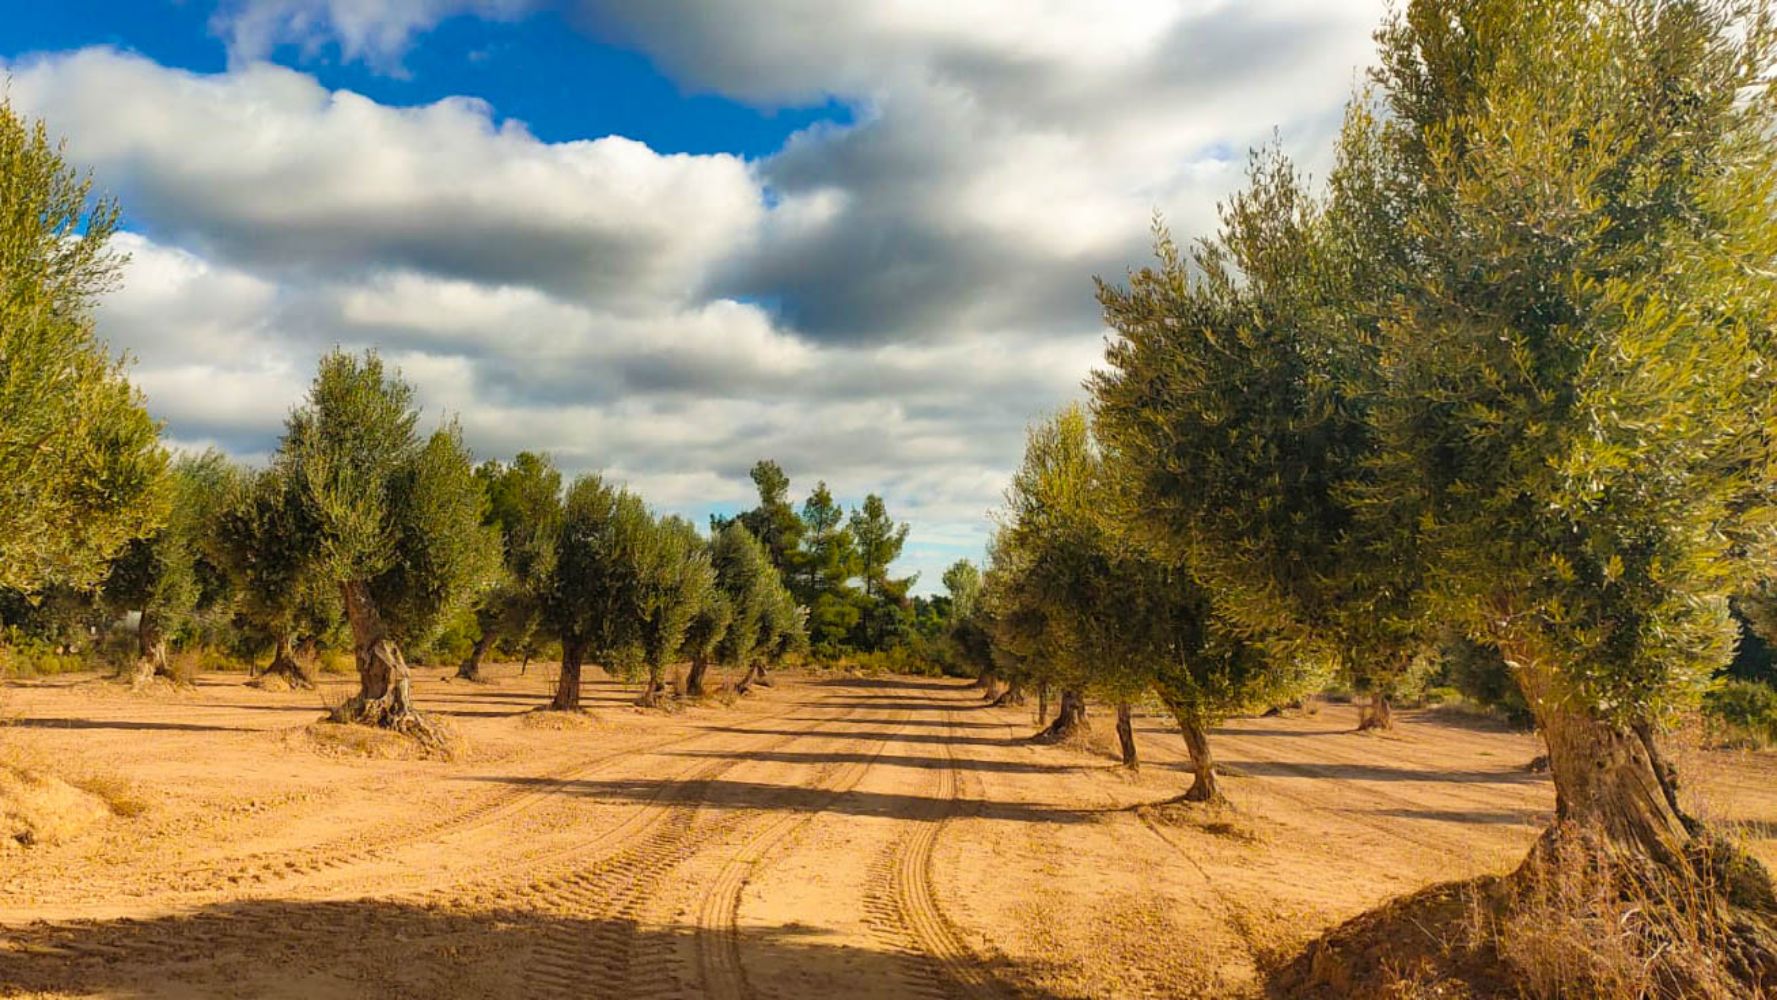 Venta de olivar con masía en Teruel